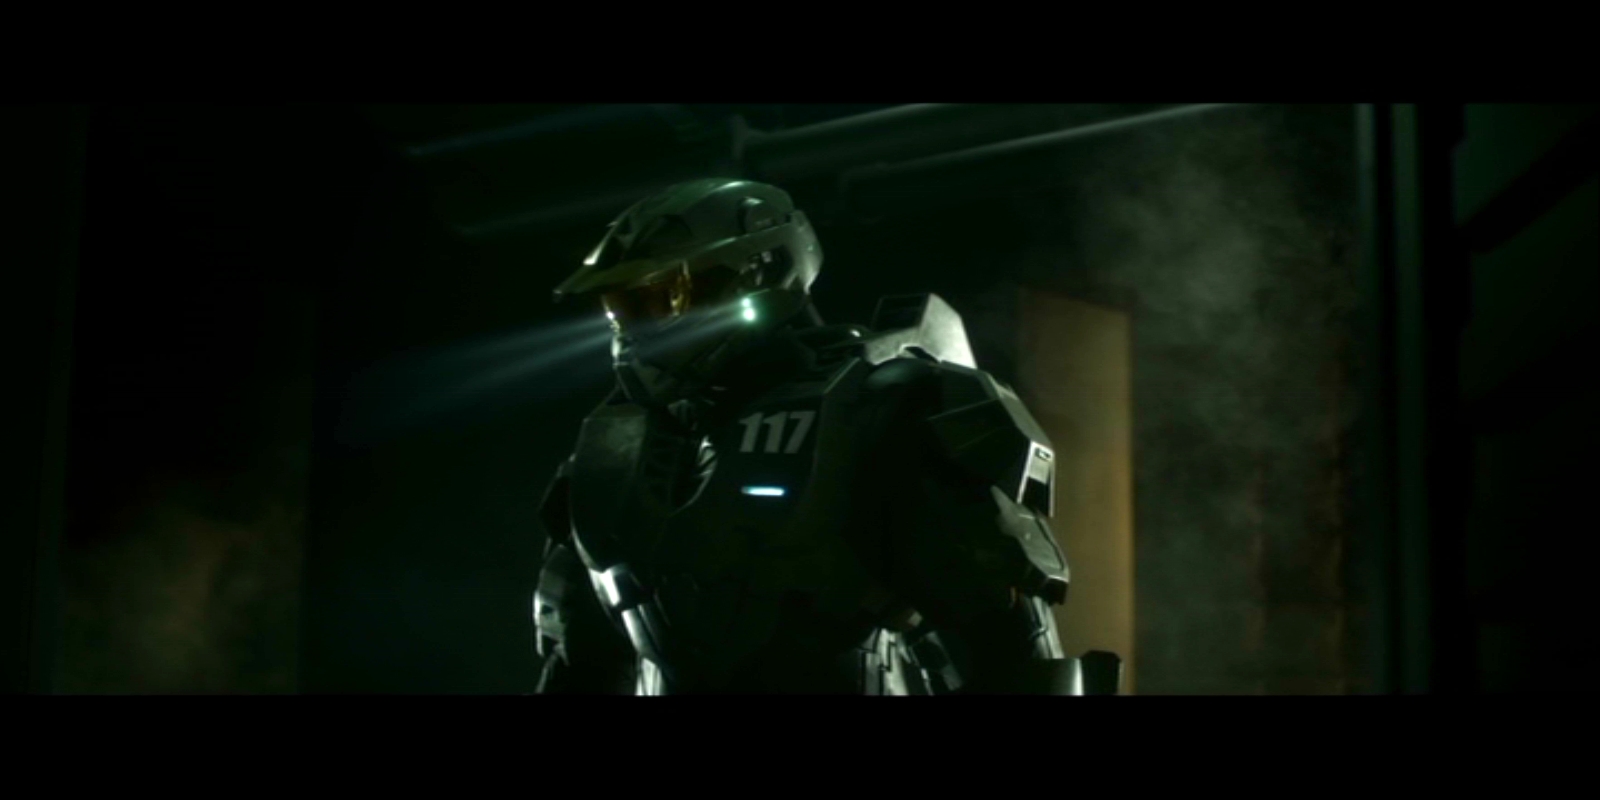 Halo 4: Forward Unto Dawn Picture